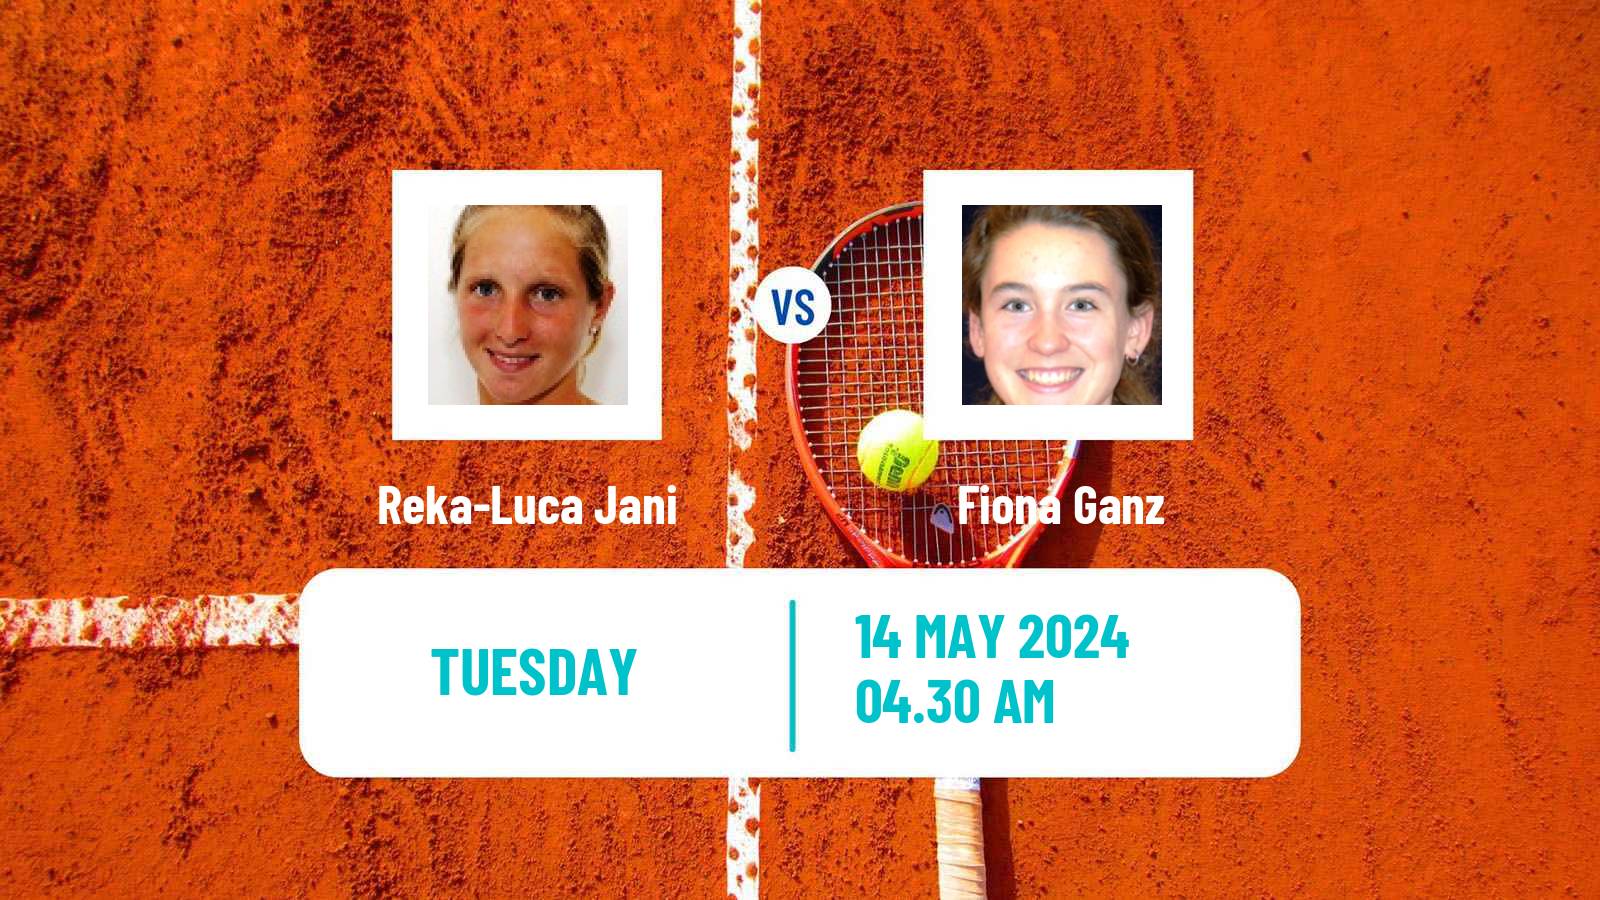 Tennis ITF W35 Villach Women Reka-Luca Jani - Fiona Ganz